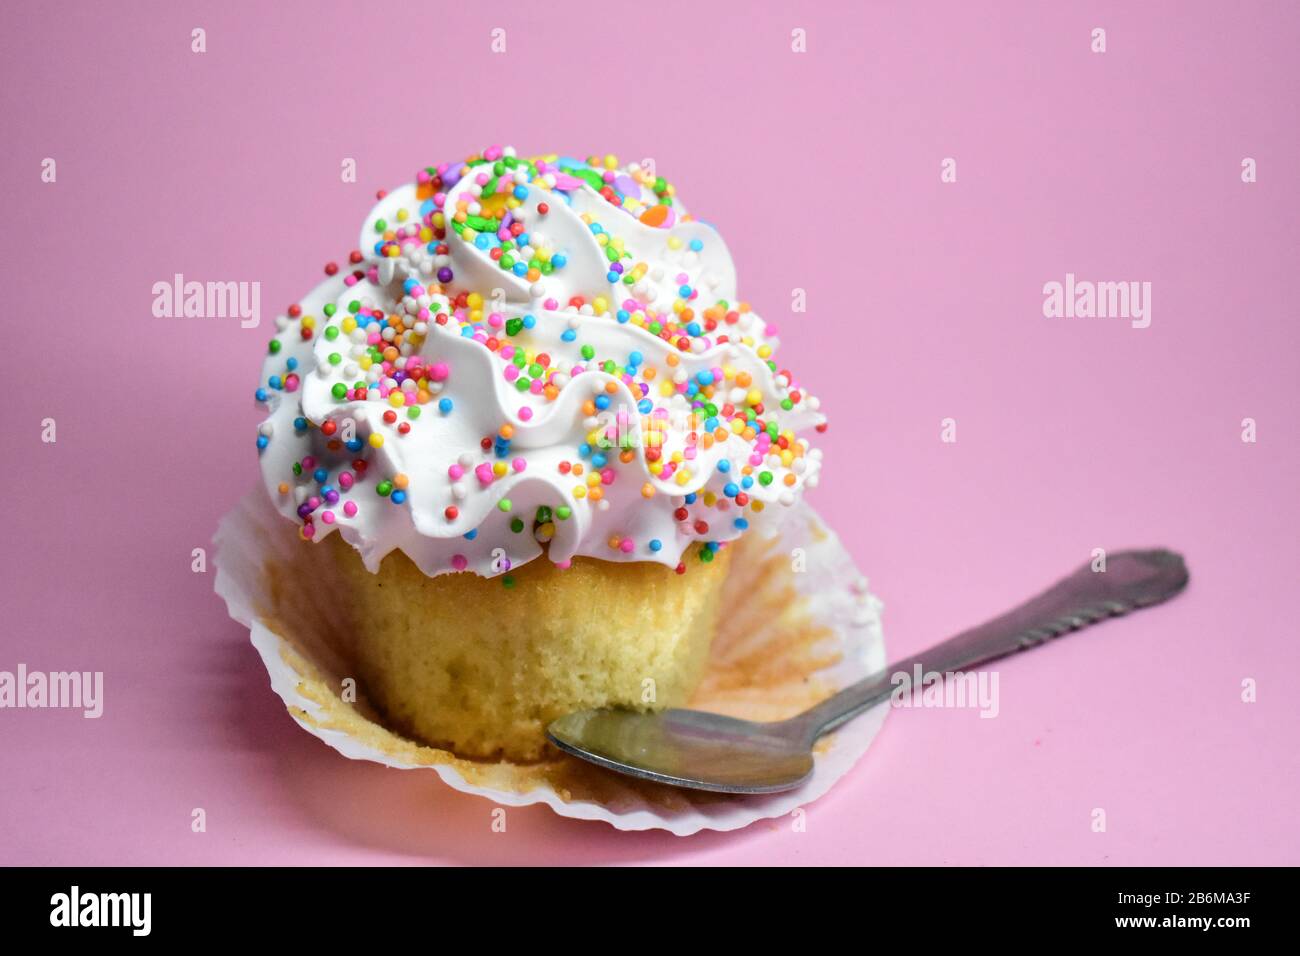 Cupcake con Chispas de Colores en fondo rosa Stock Photo